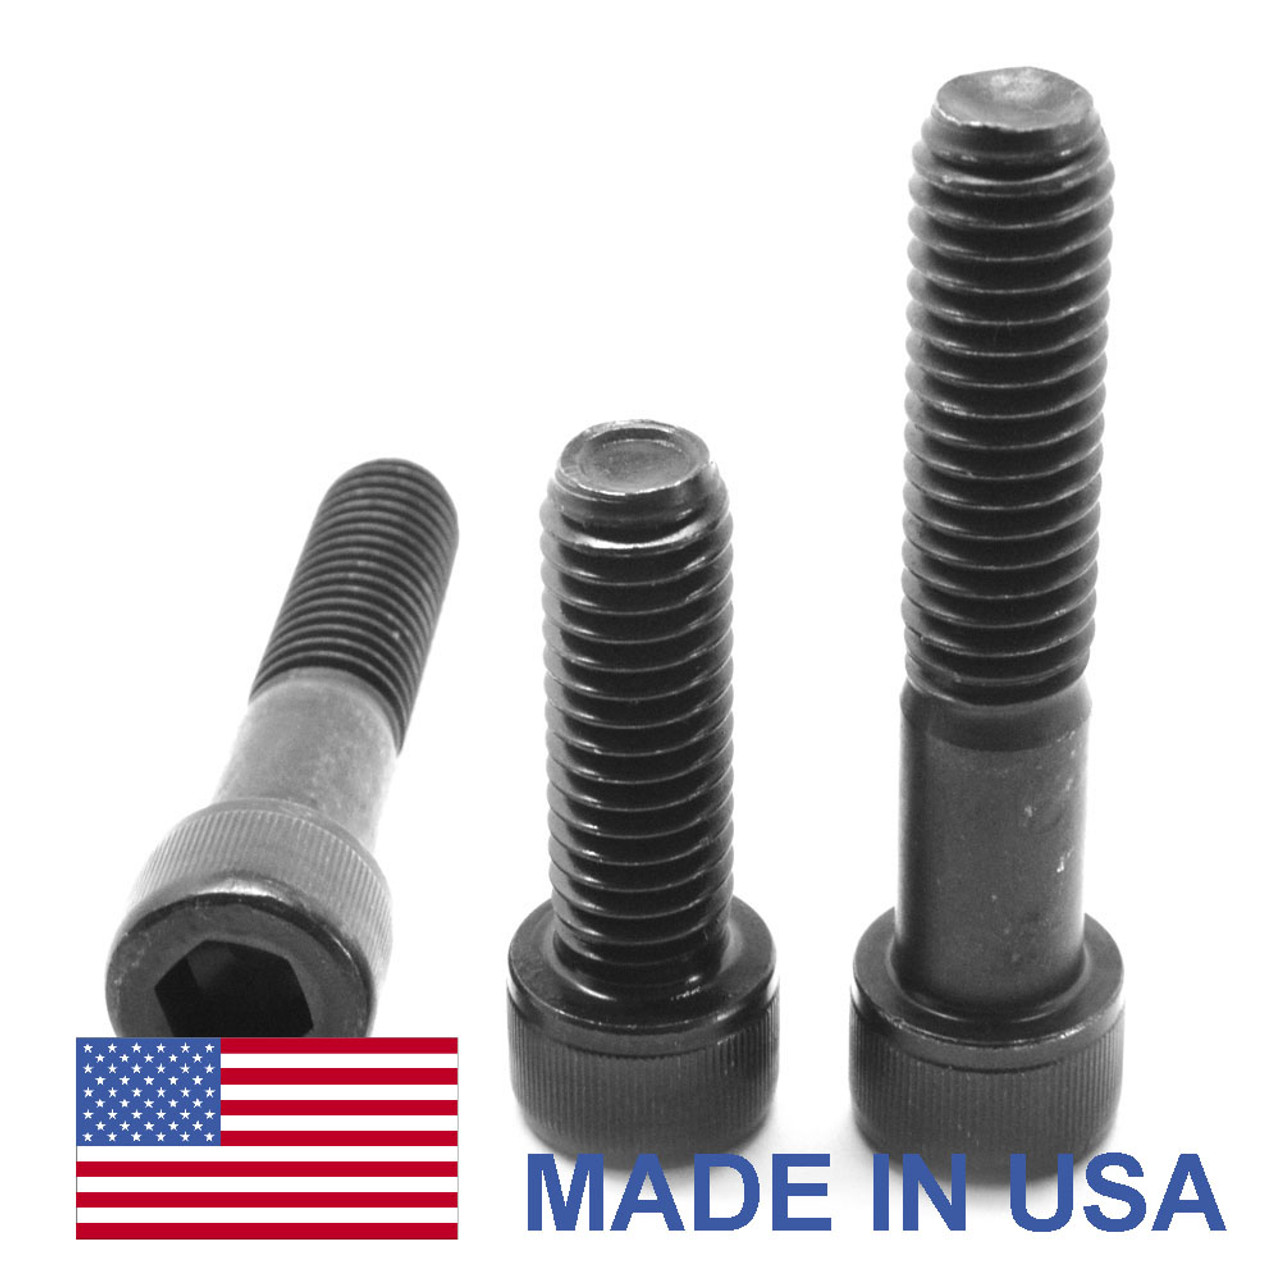 M8 x 1.25 x 55 MM Coarse Thread Socket Head Cap Screw - USA Alloy Steel Thermal Black Oxide